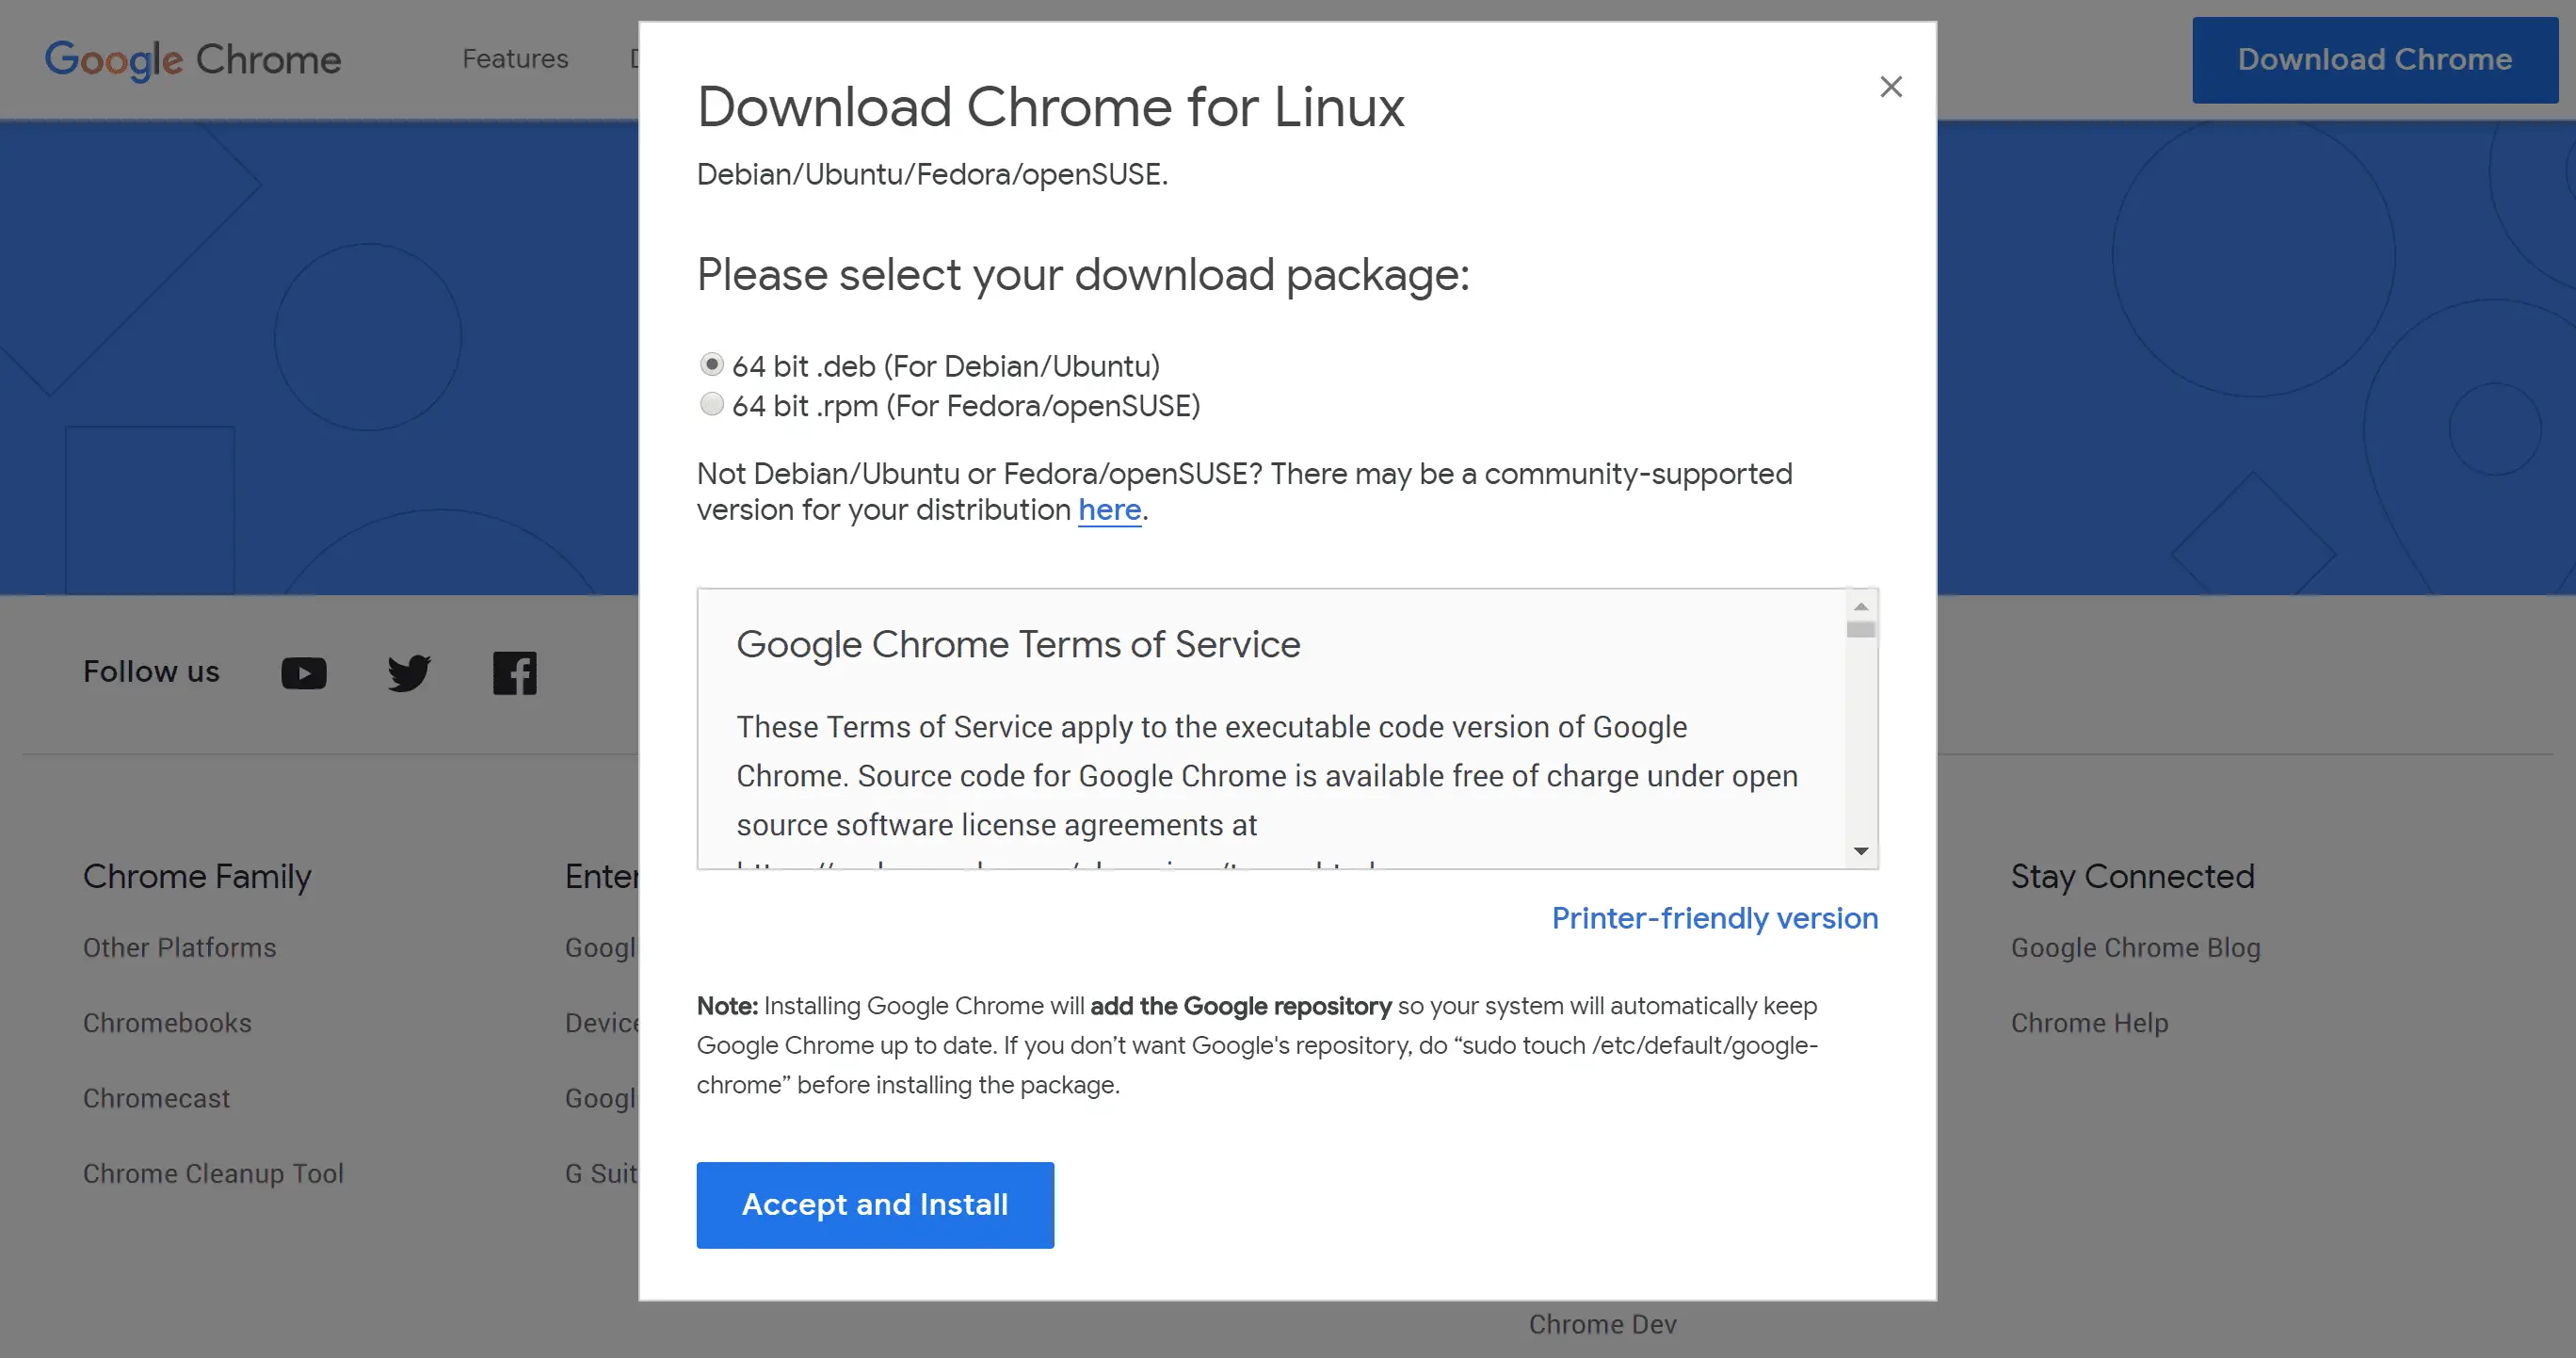 Tela de download do Google Chrome para Linux.